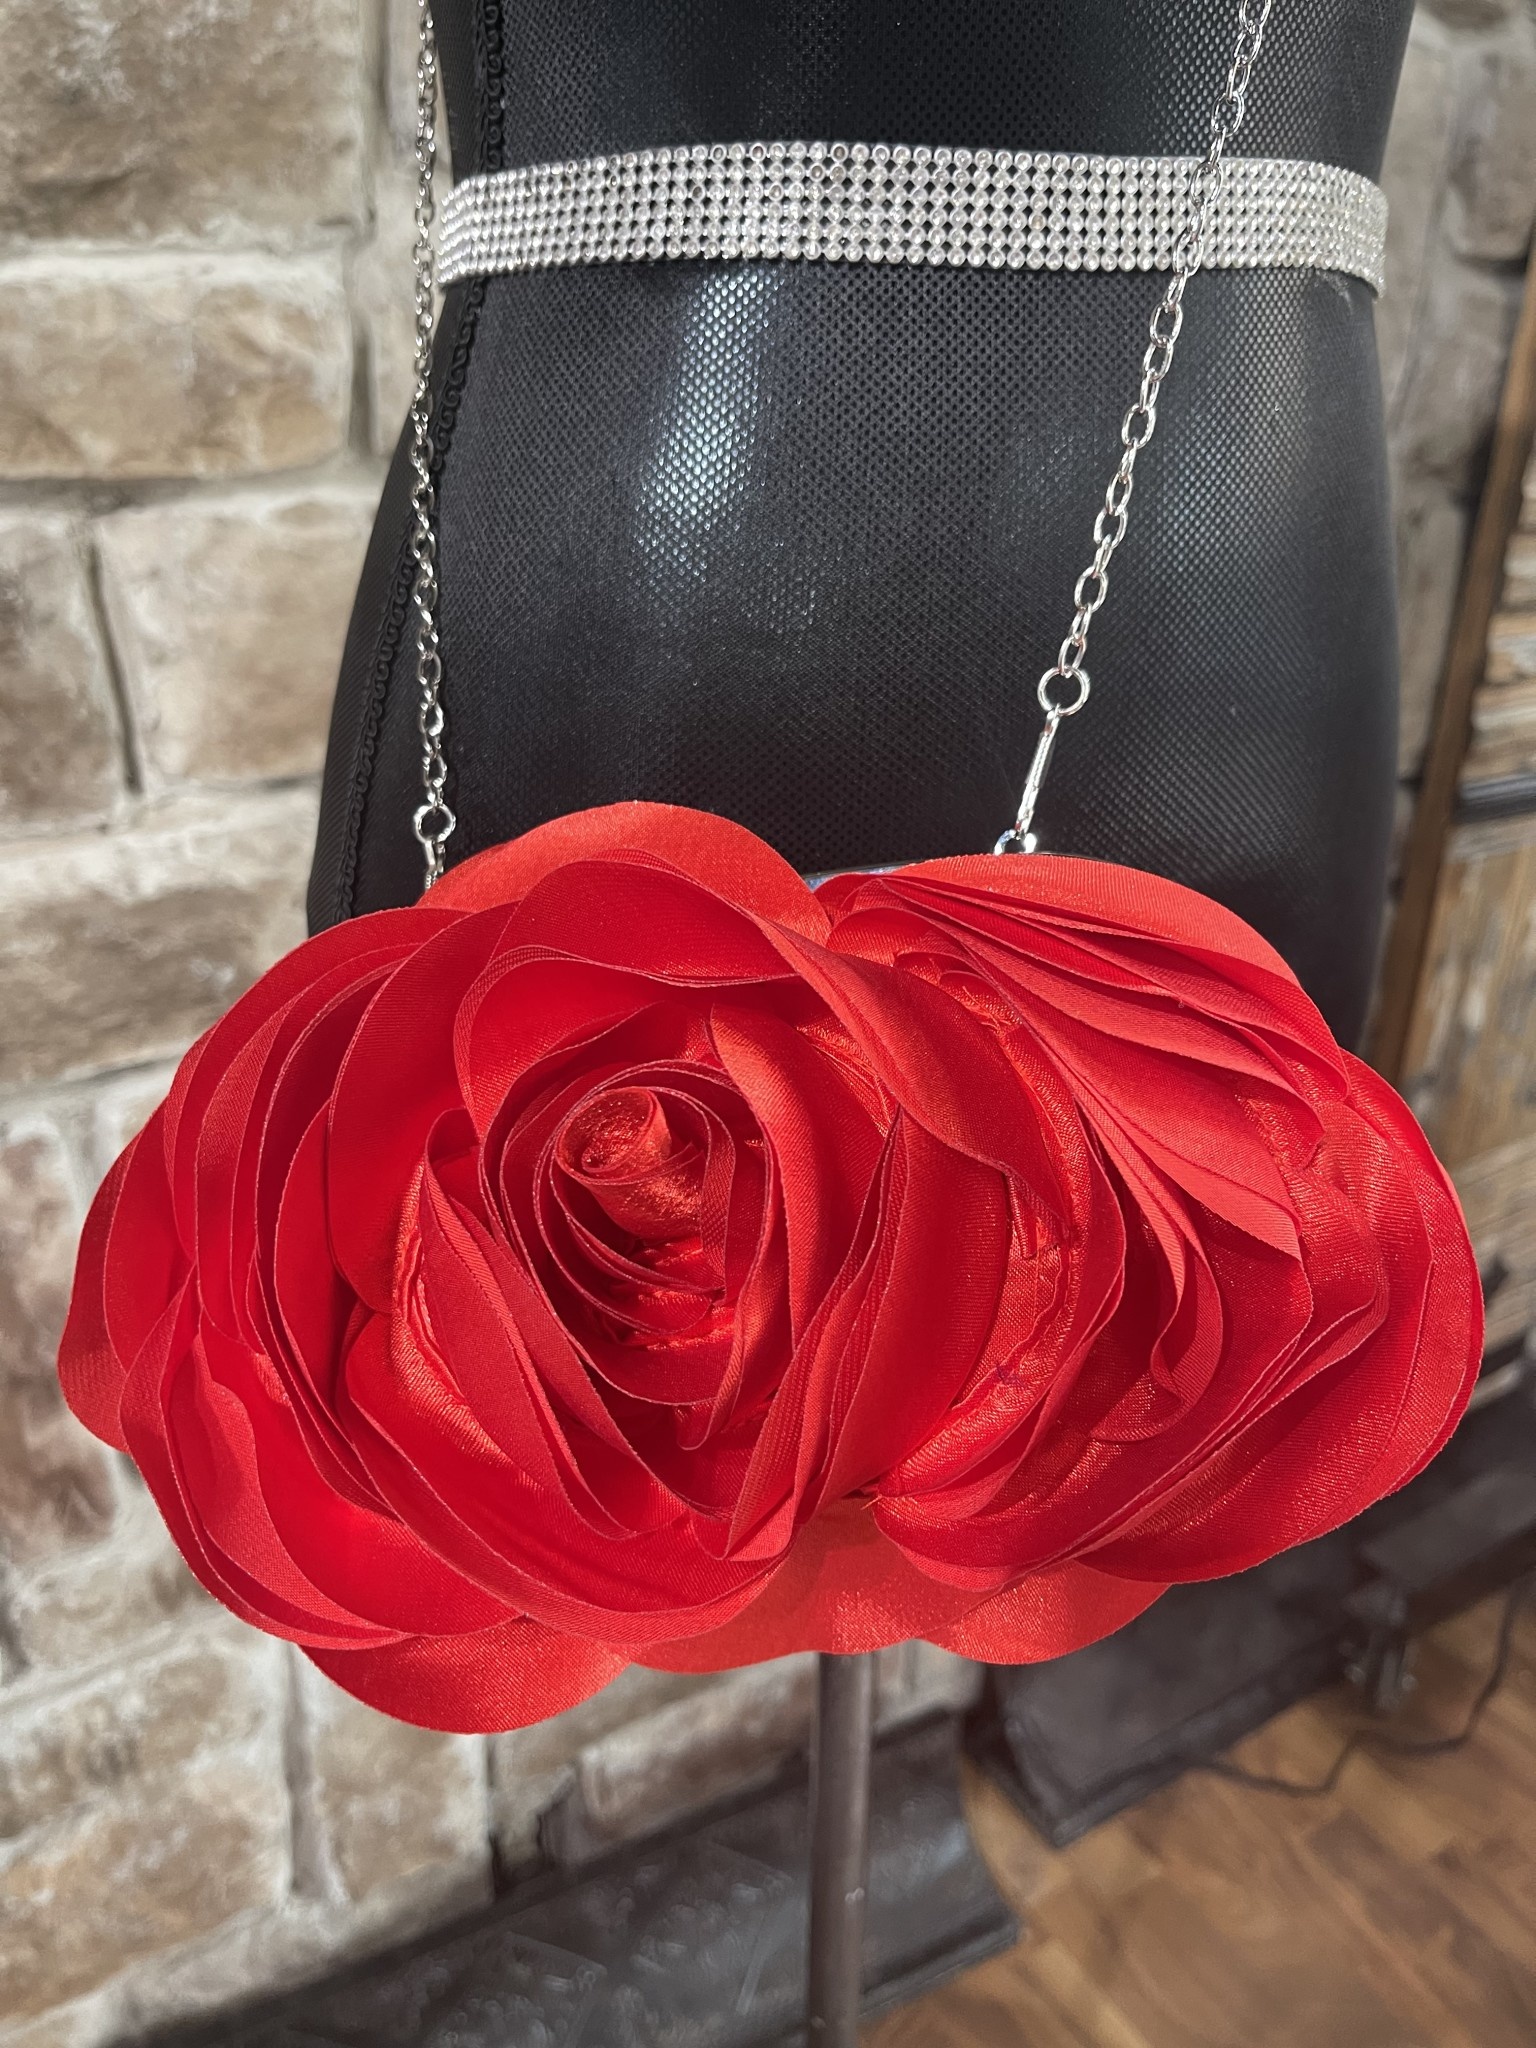 Retro Elegant Faux Black Leather Handbag Flower Red Rose Shoulder Purse Bag  Tote | eBay